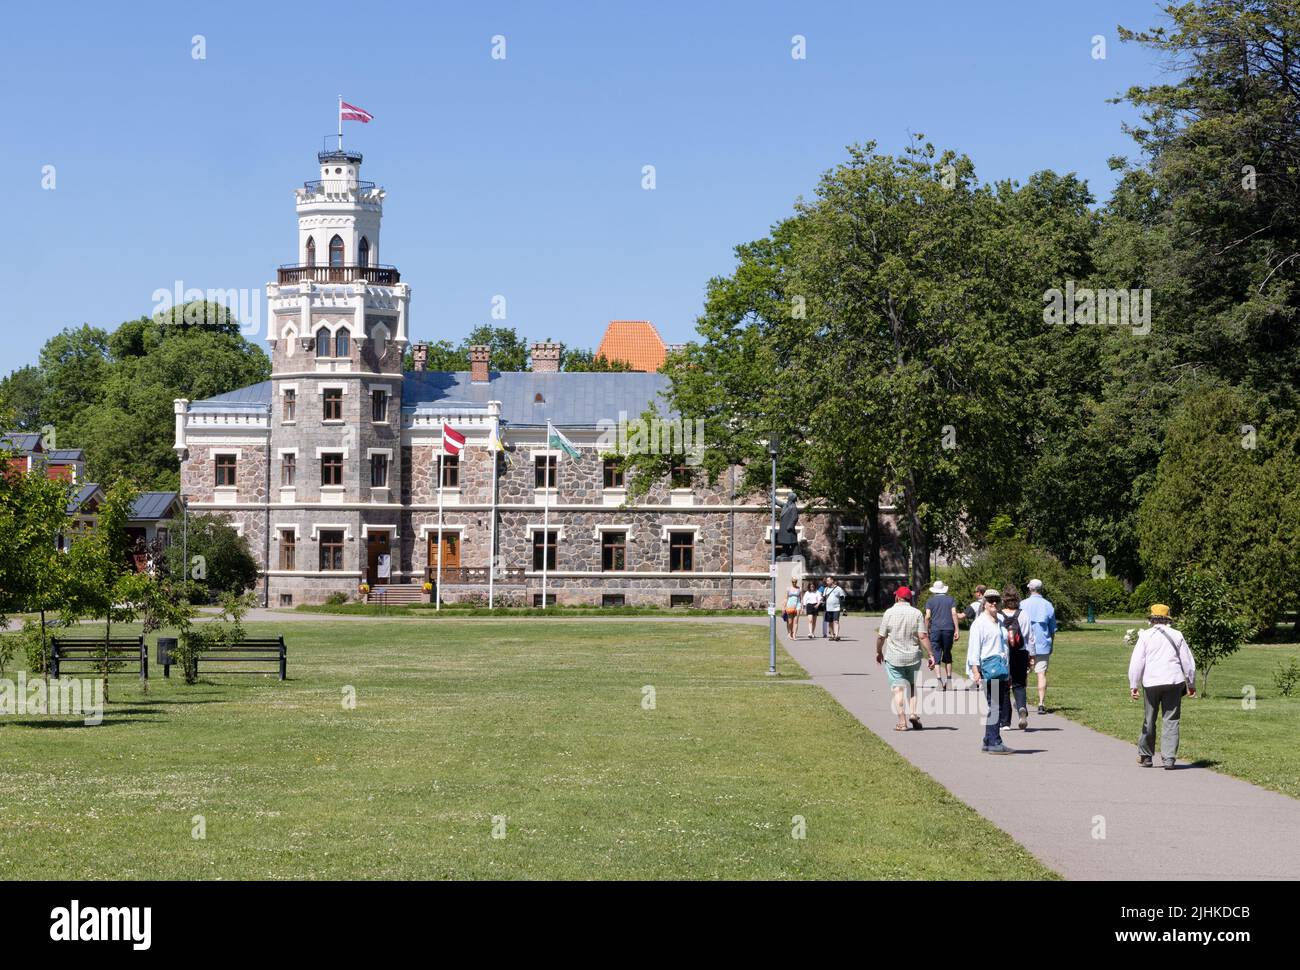 Visitatori all'esterno del castello di Sigulda, noto anche come nuovo castello di Sigulda, un edificio di architettura neo-gotica del 19th° secolo; Sigulda, Lettonia. Gli Stati baltici viaggiano. Foto Stock